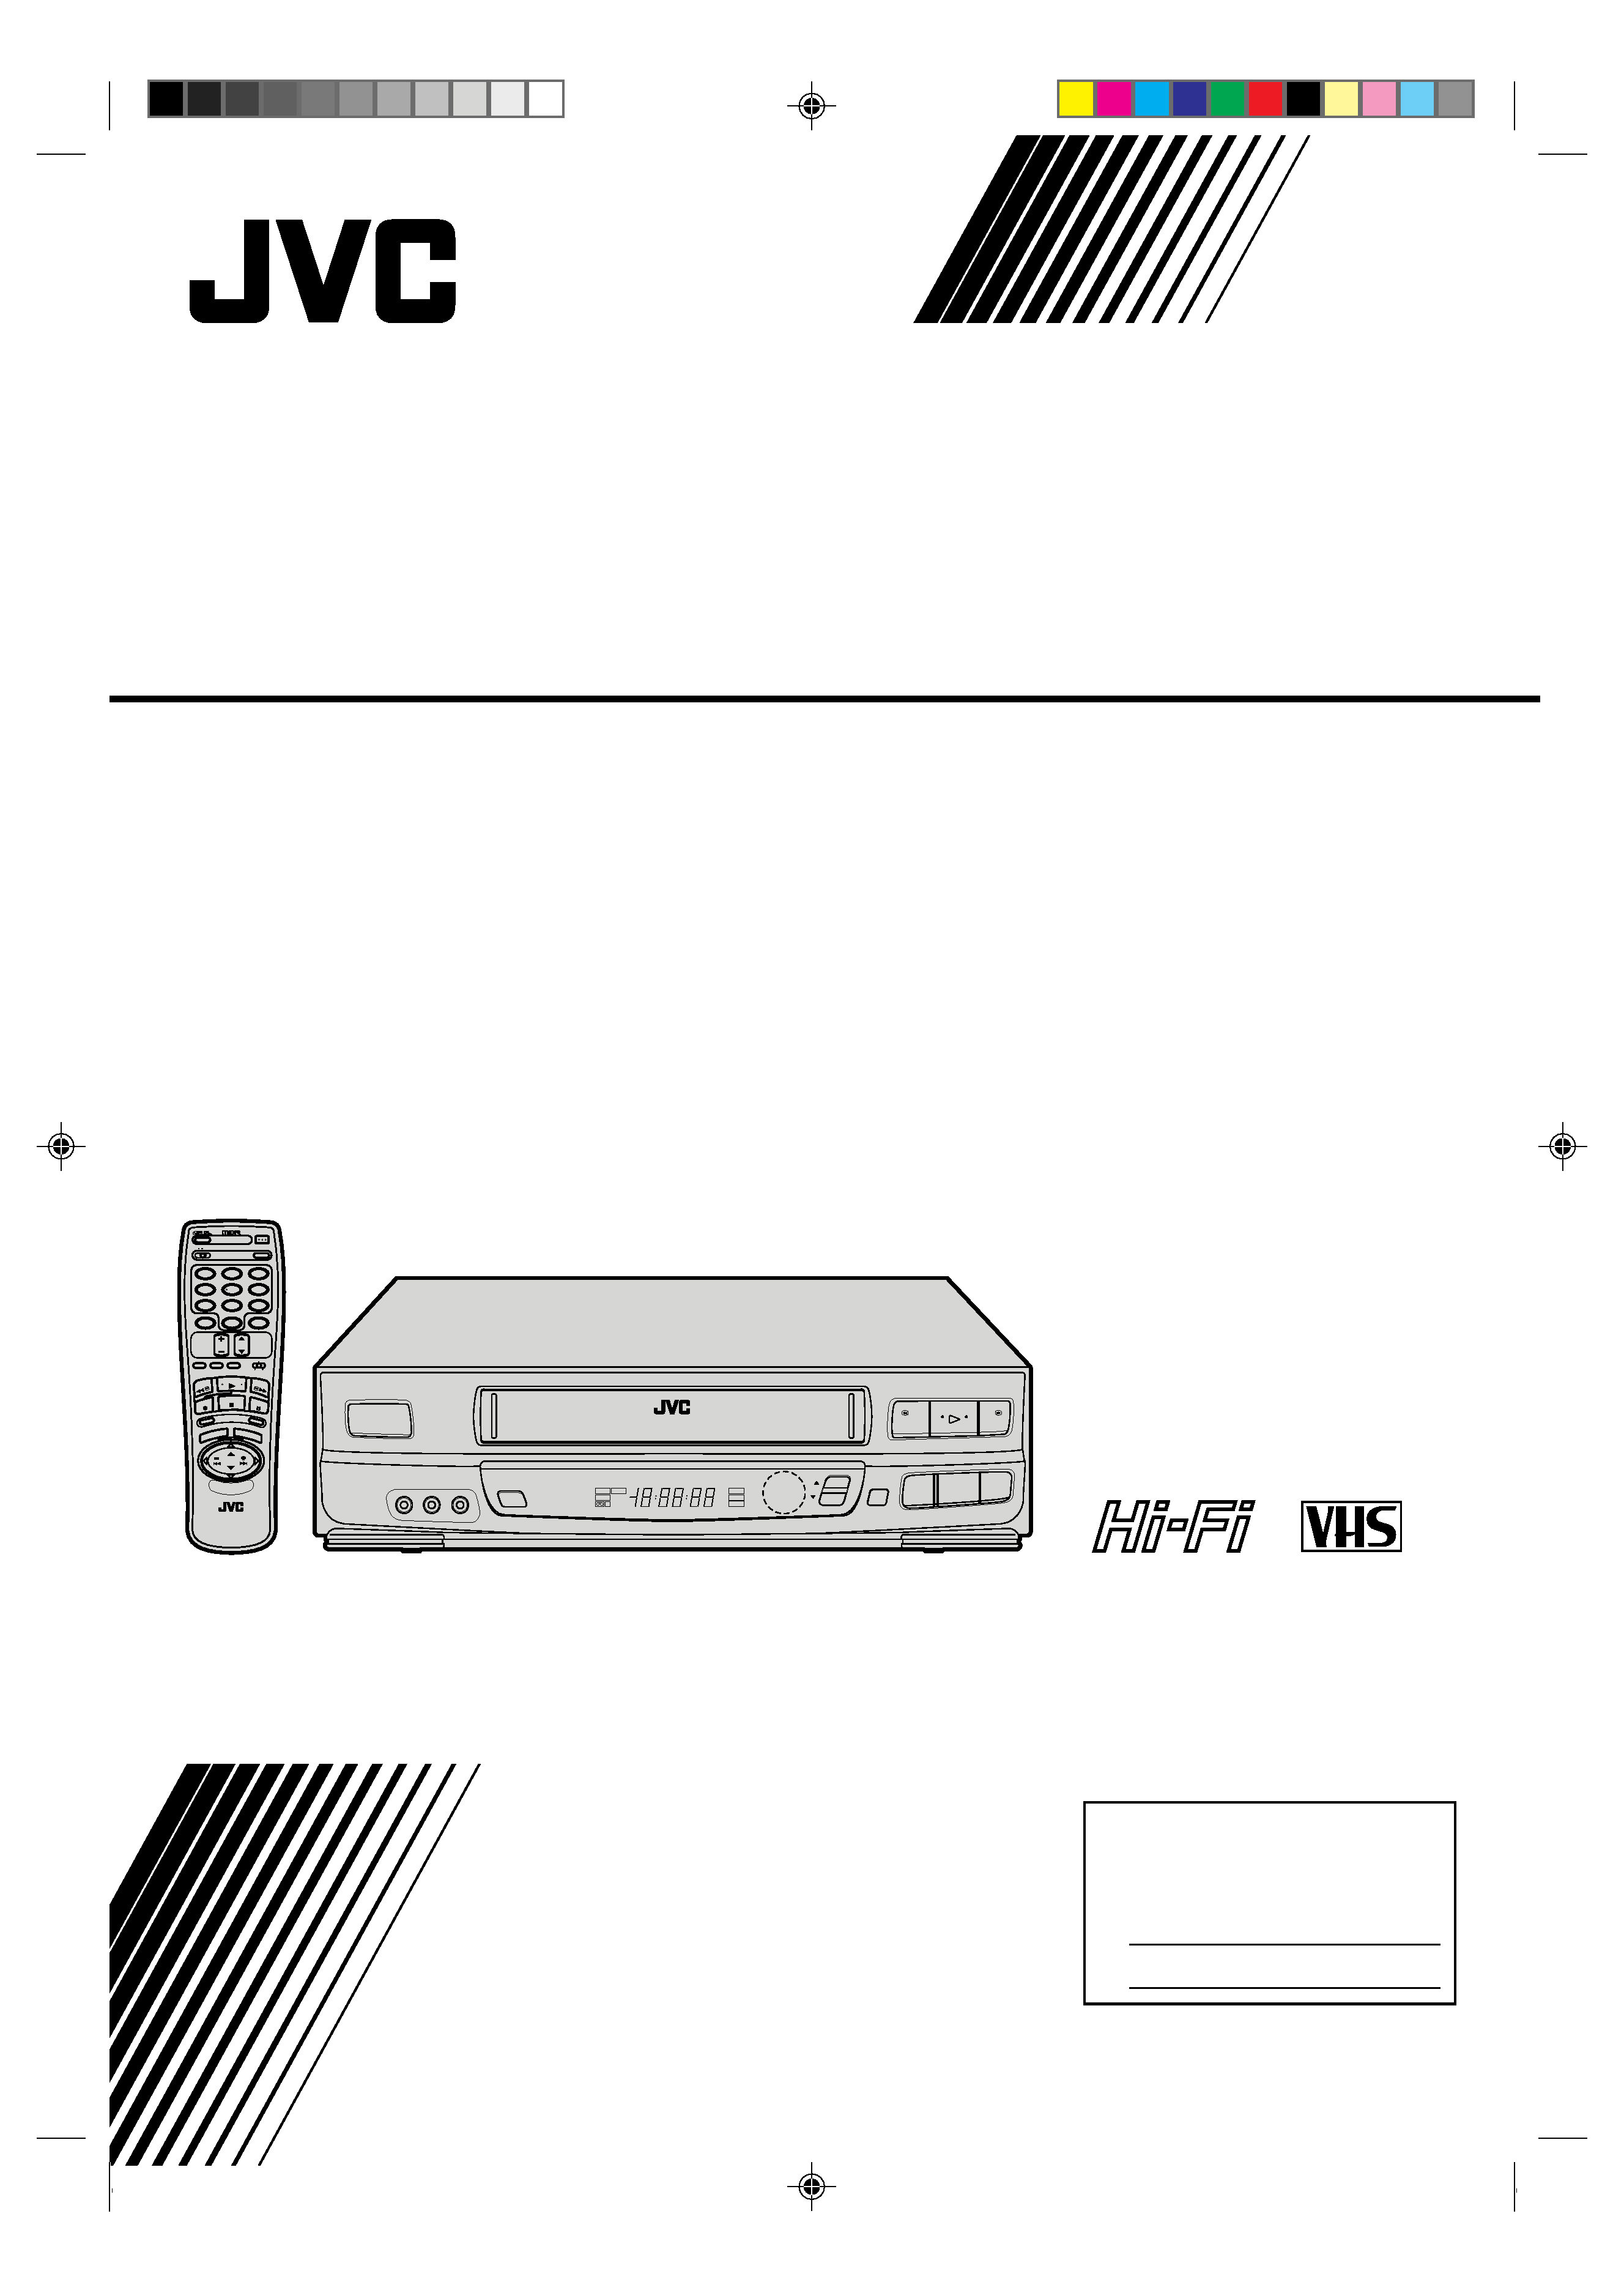 JVC JVC HR-J633U 4 Head VHS Player VCR 